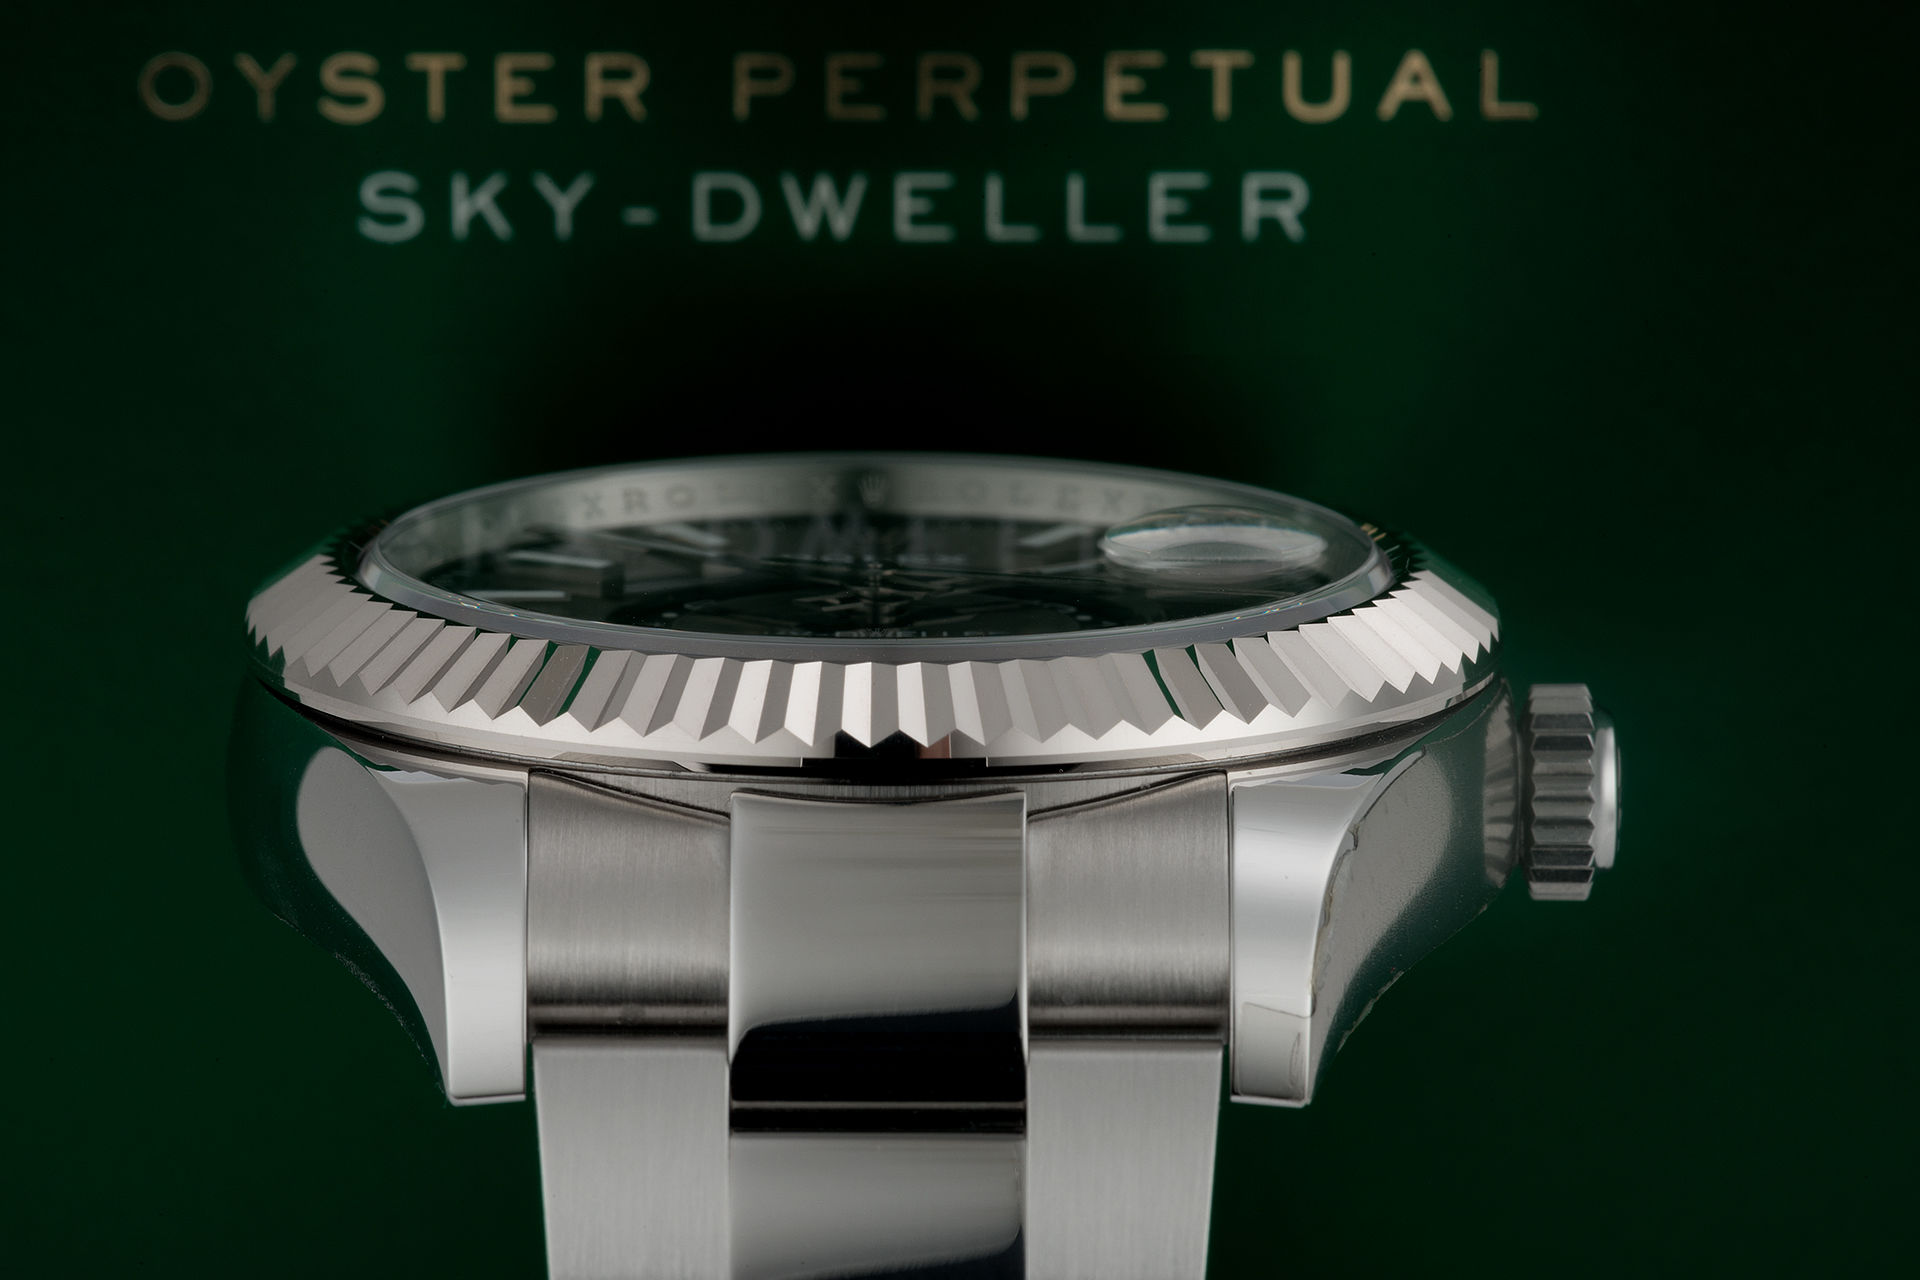 ref 326934 | New Steel Model '5 Year Warranty' | Rolex Sky Dweller